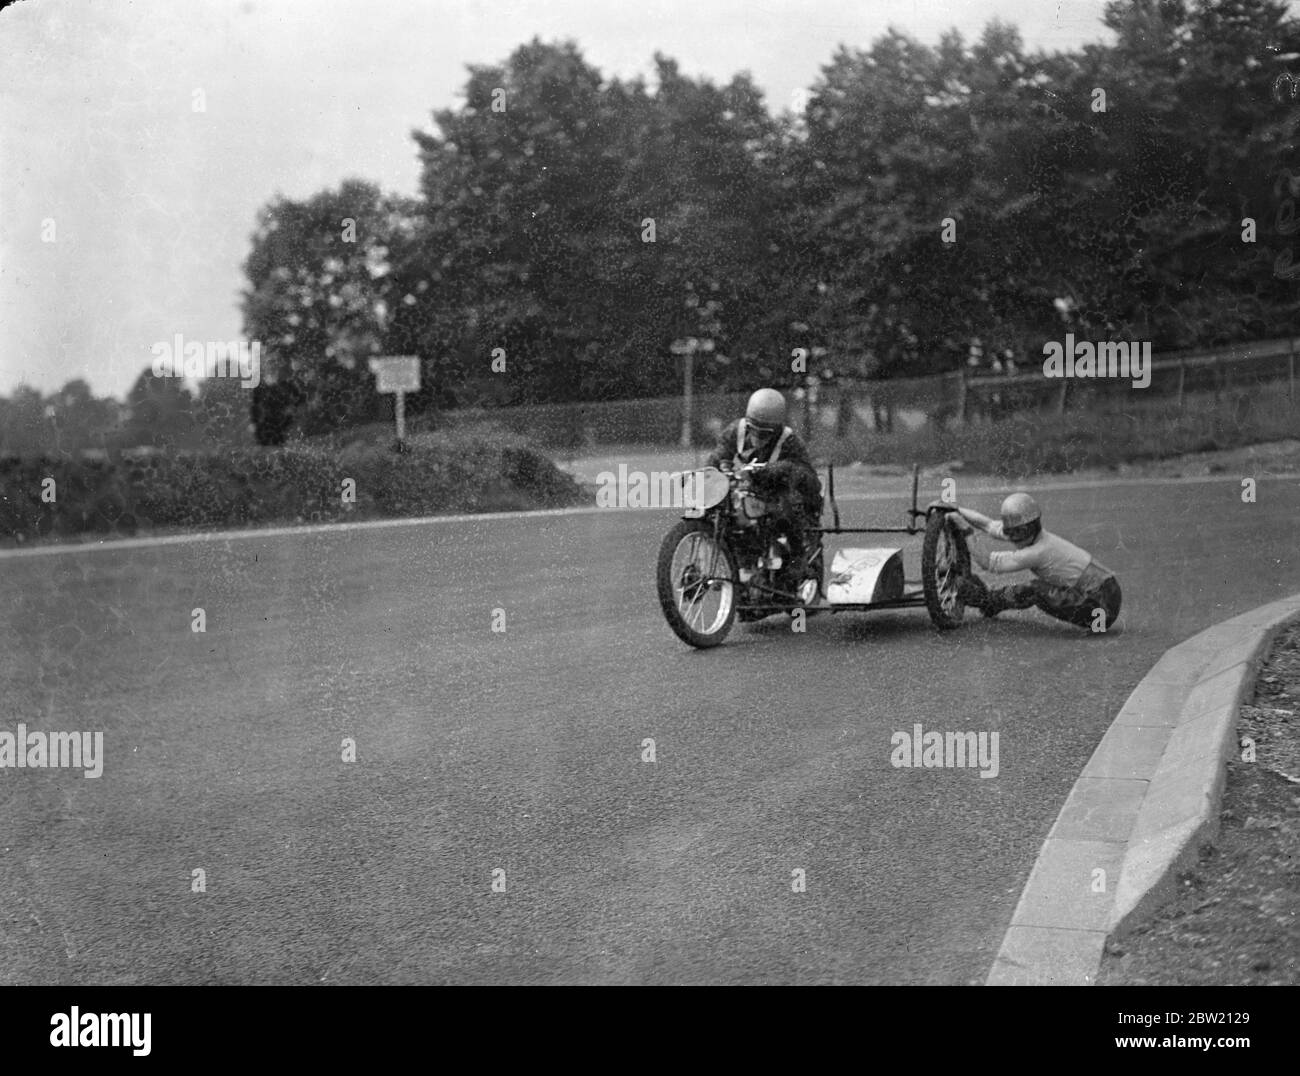 Motorradfahrer hatten ein letztes Training auf dem Crystal Palace Road Racing Circuit für das London Grand Prix Treffen heute (Samstag). Der Beifahrer fast am Boden, als er sich an einem Rad festklammert, als John Surtees New Zealand Bend umrundet. 17 Juli 1937. Stockfoto